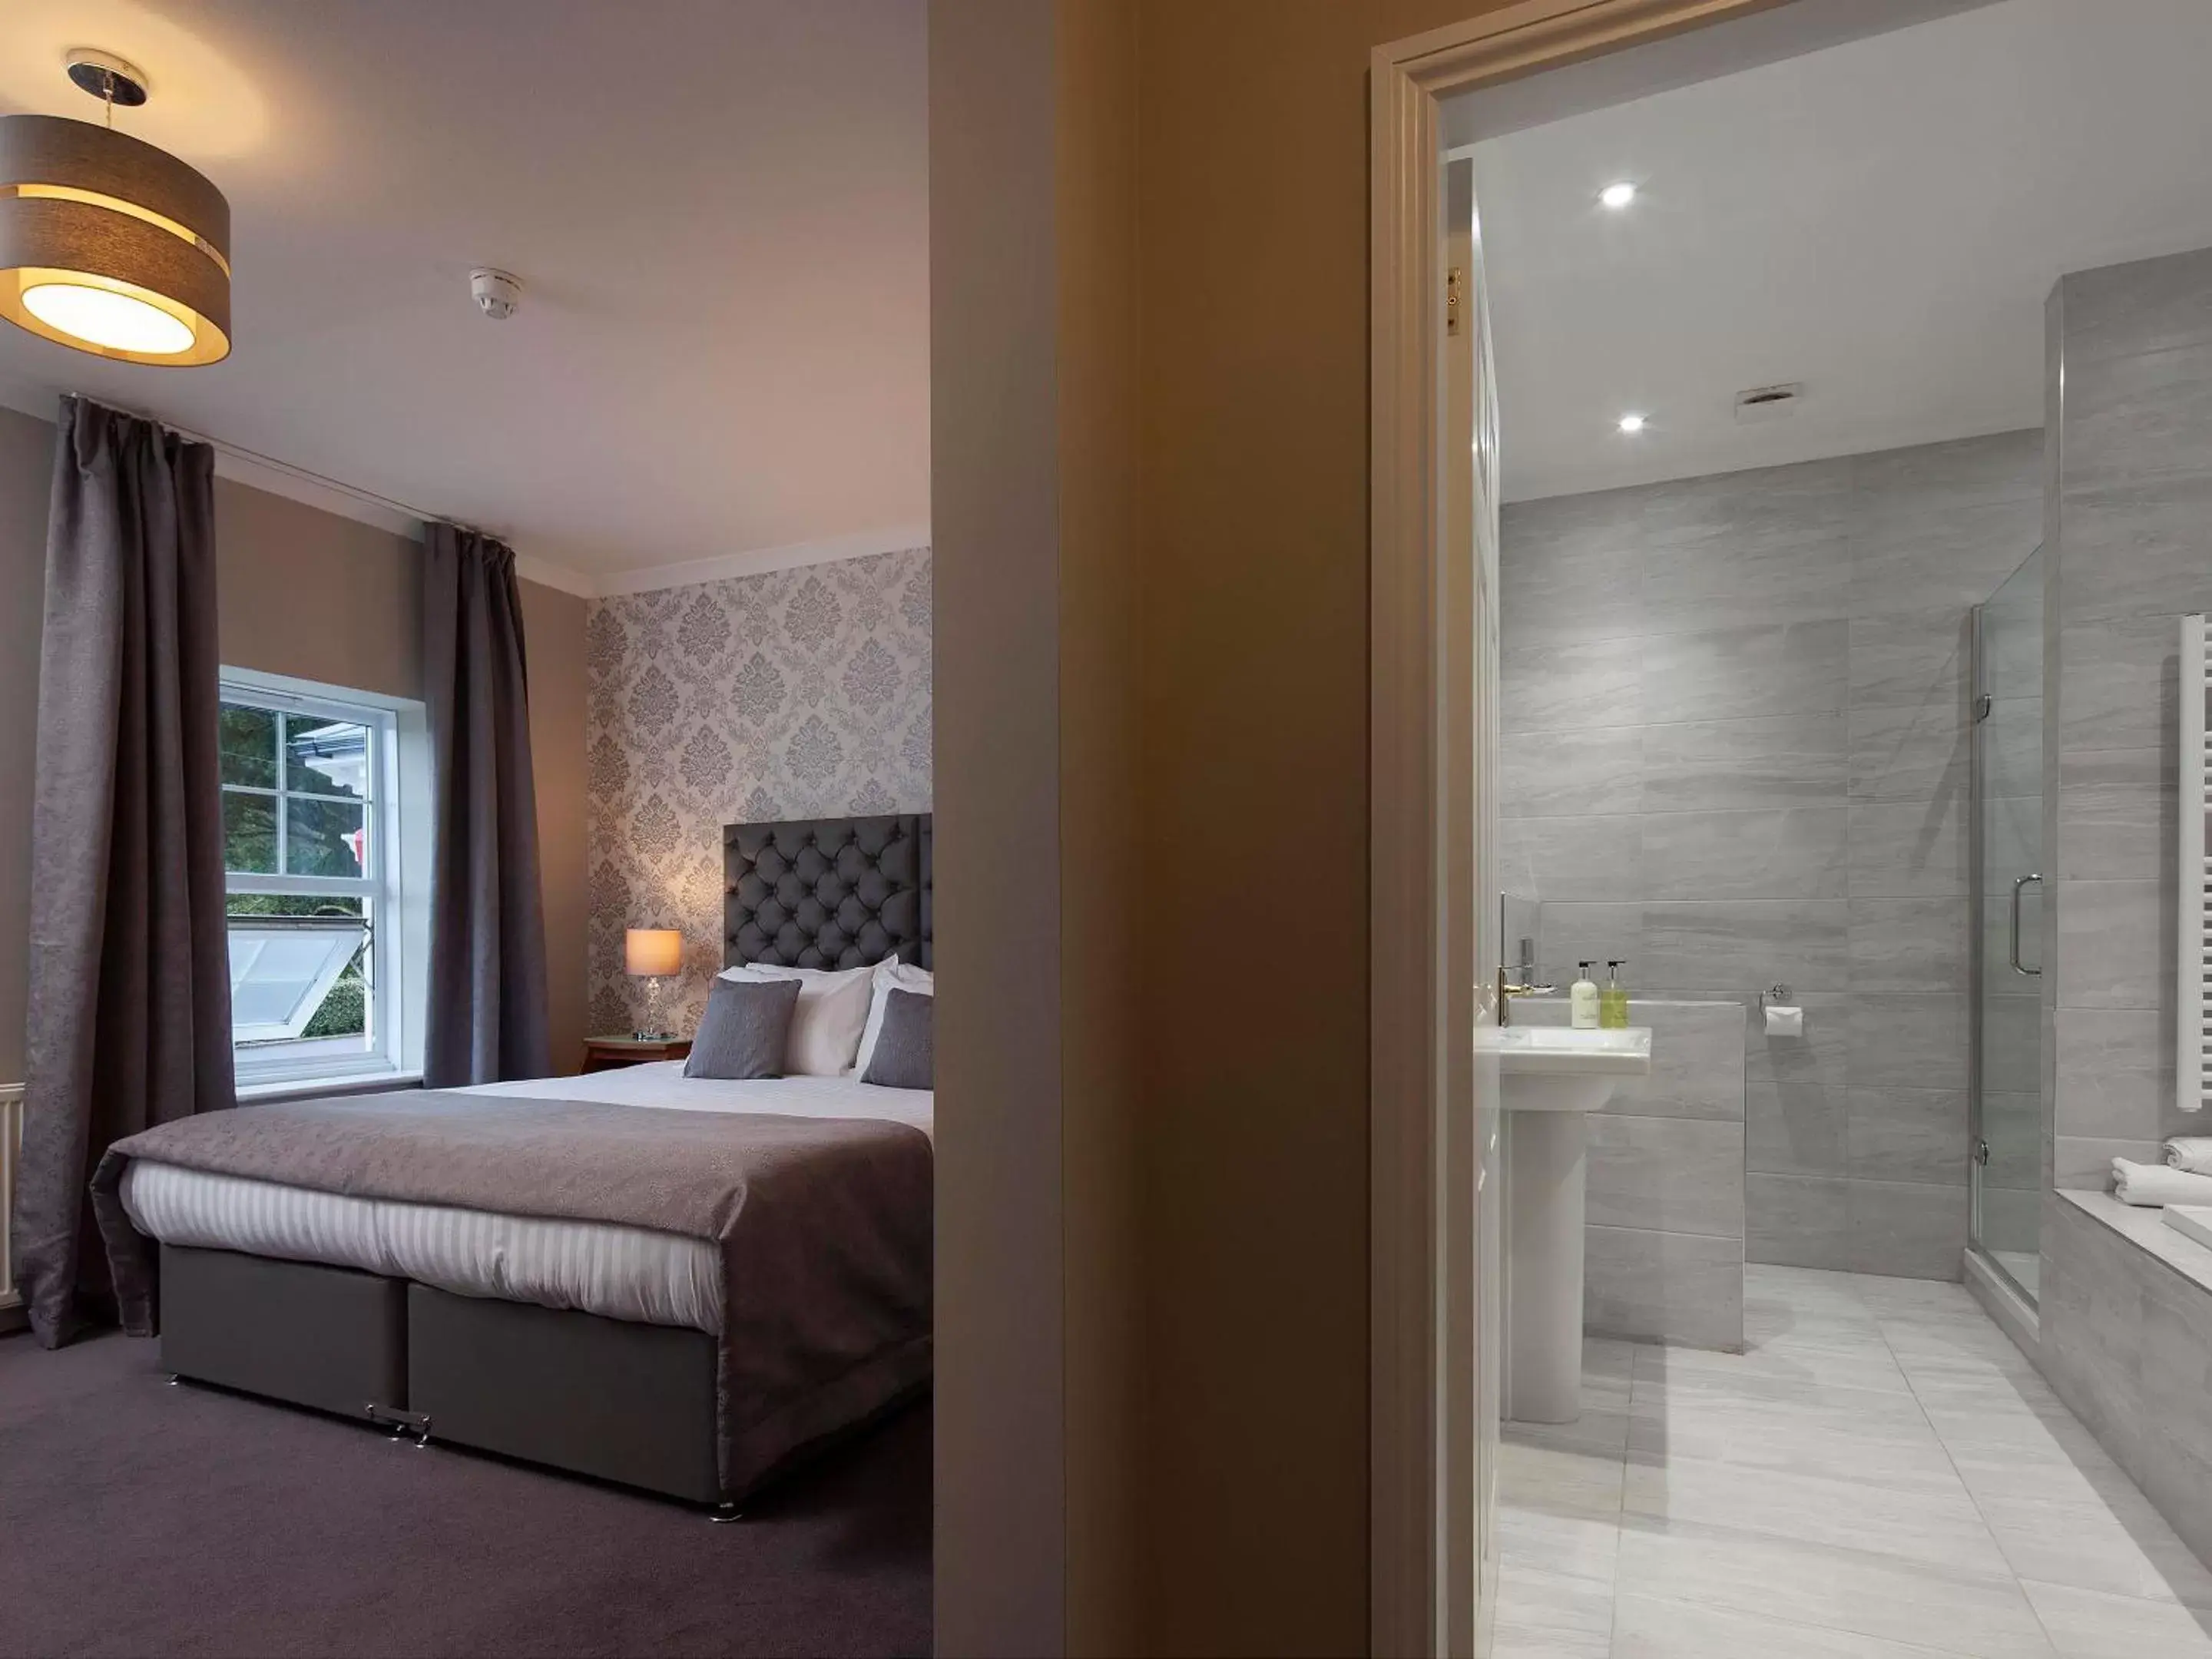 Bedroom, Bathroom in Elfordleigh Hotel